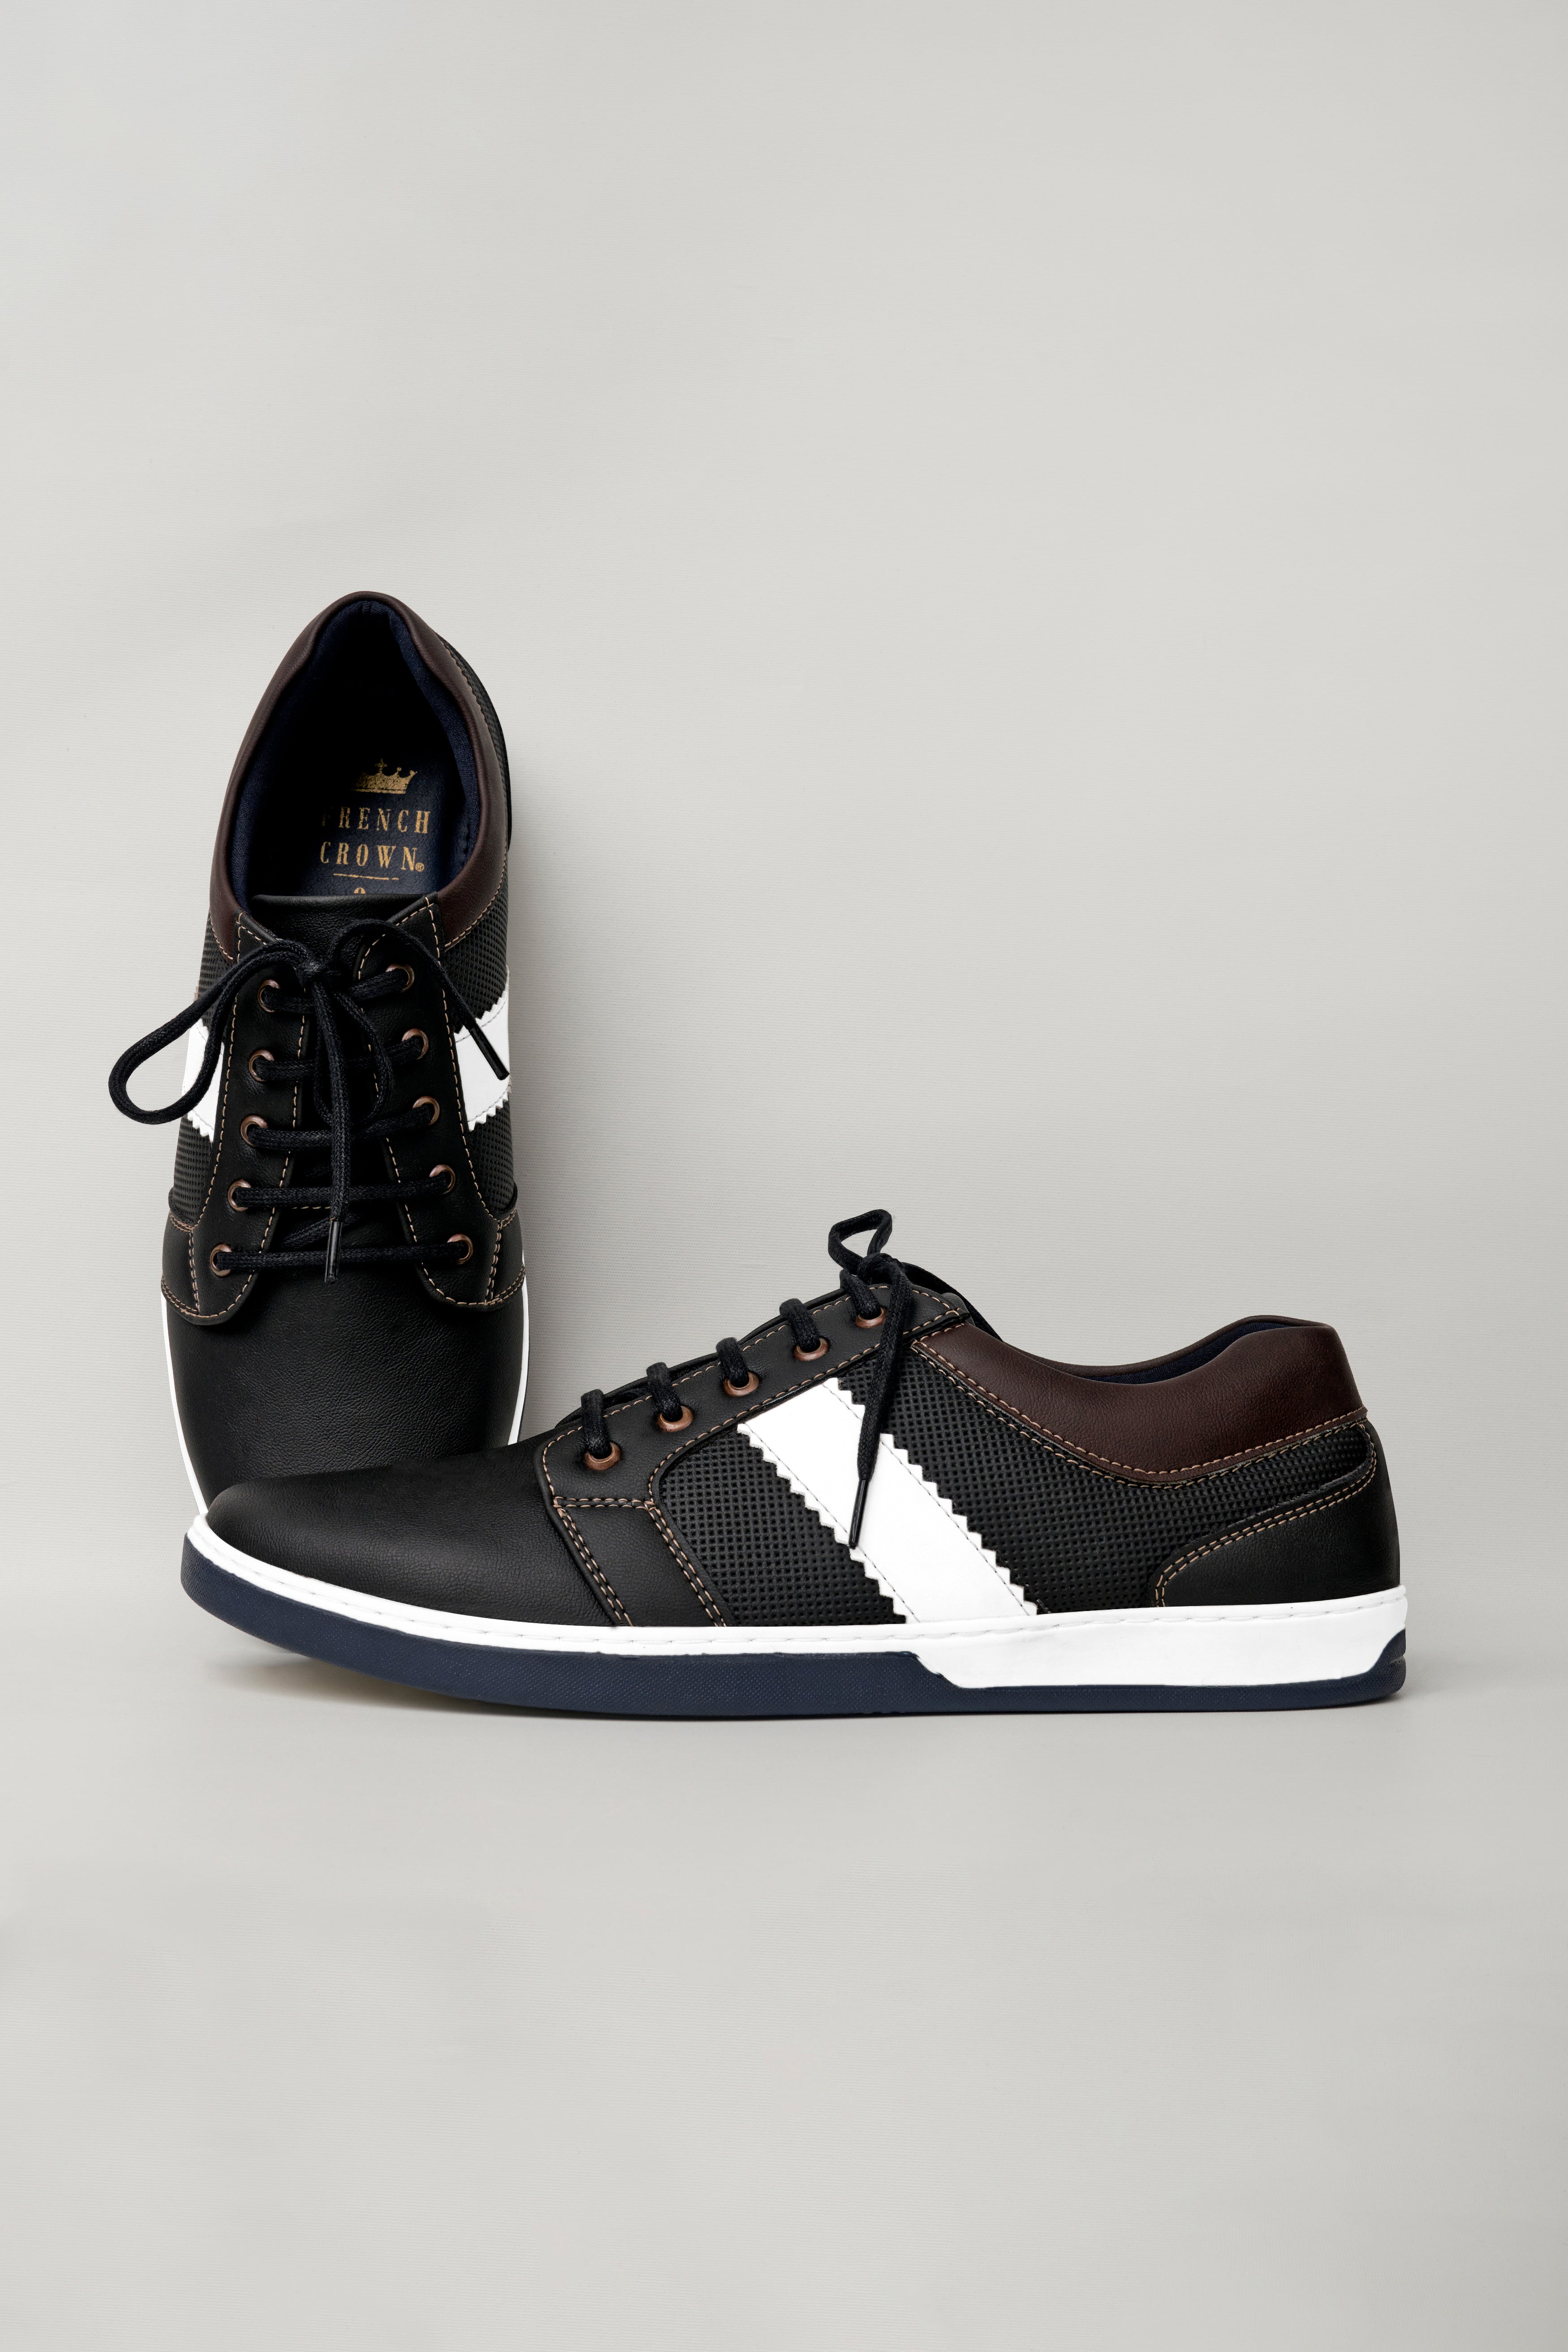 Jade Black Vegan Leather Derby Shoes FT115-6, FT115-7, FT115-8, FT115-9, FT115-10, FT115-11